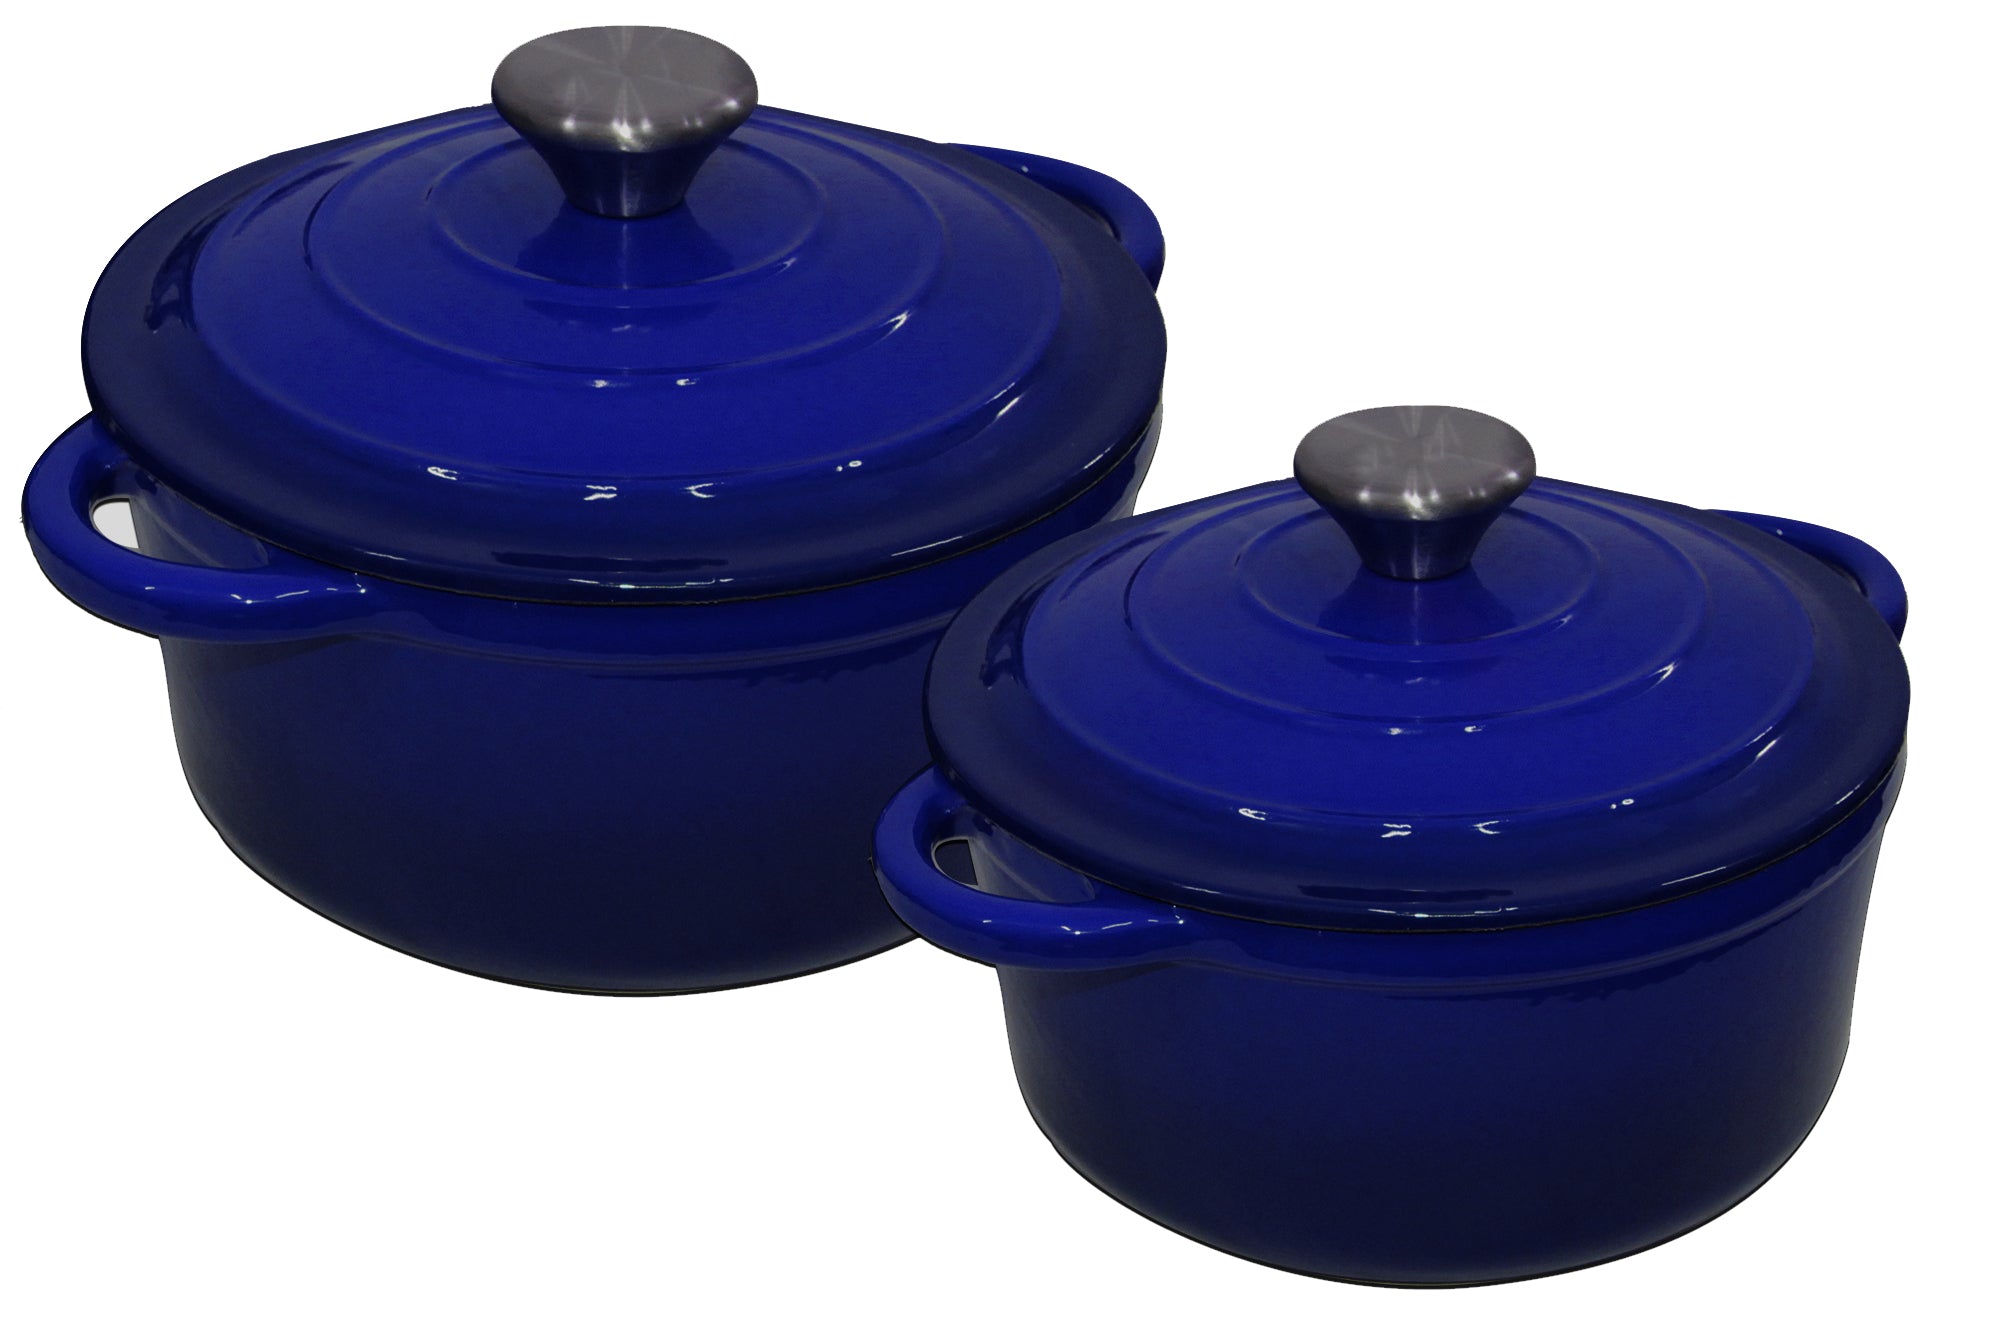 Authentic 4 Piece Cast Iron Dutch Oven Cookware Set - 24cm & 20cm Pot Set - Blue